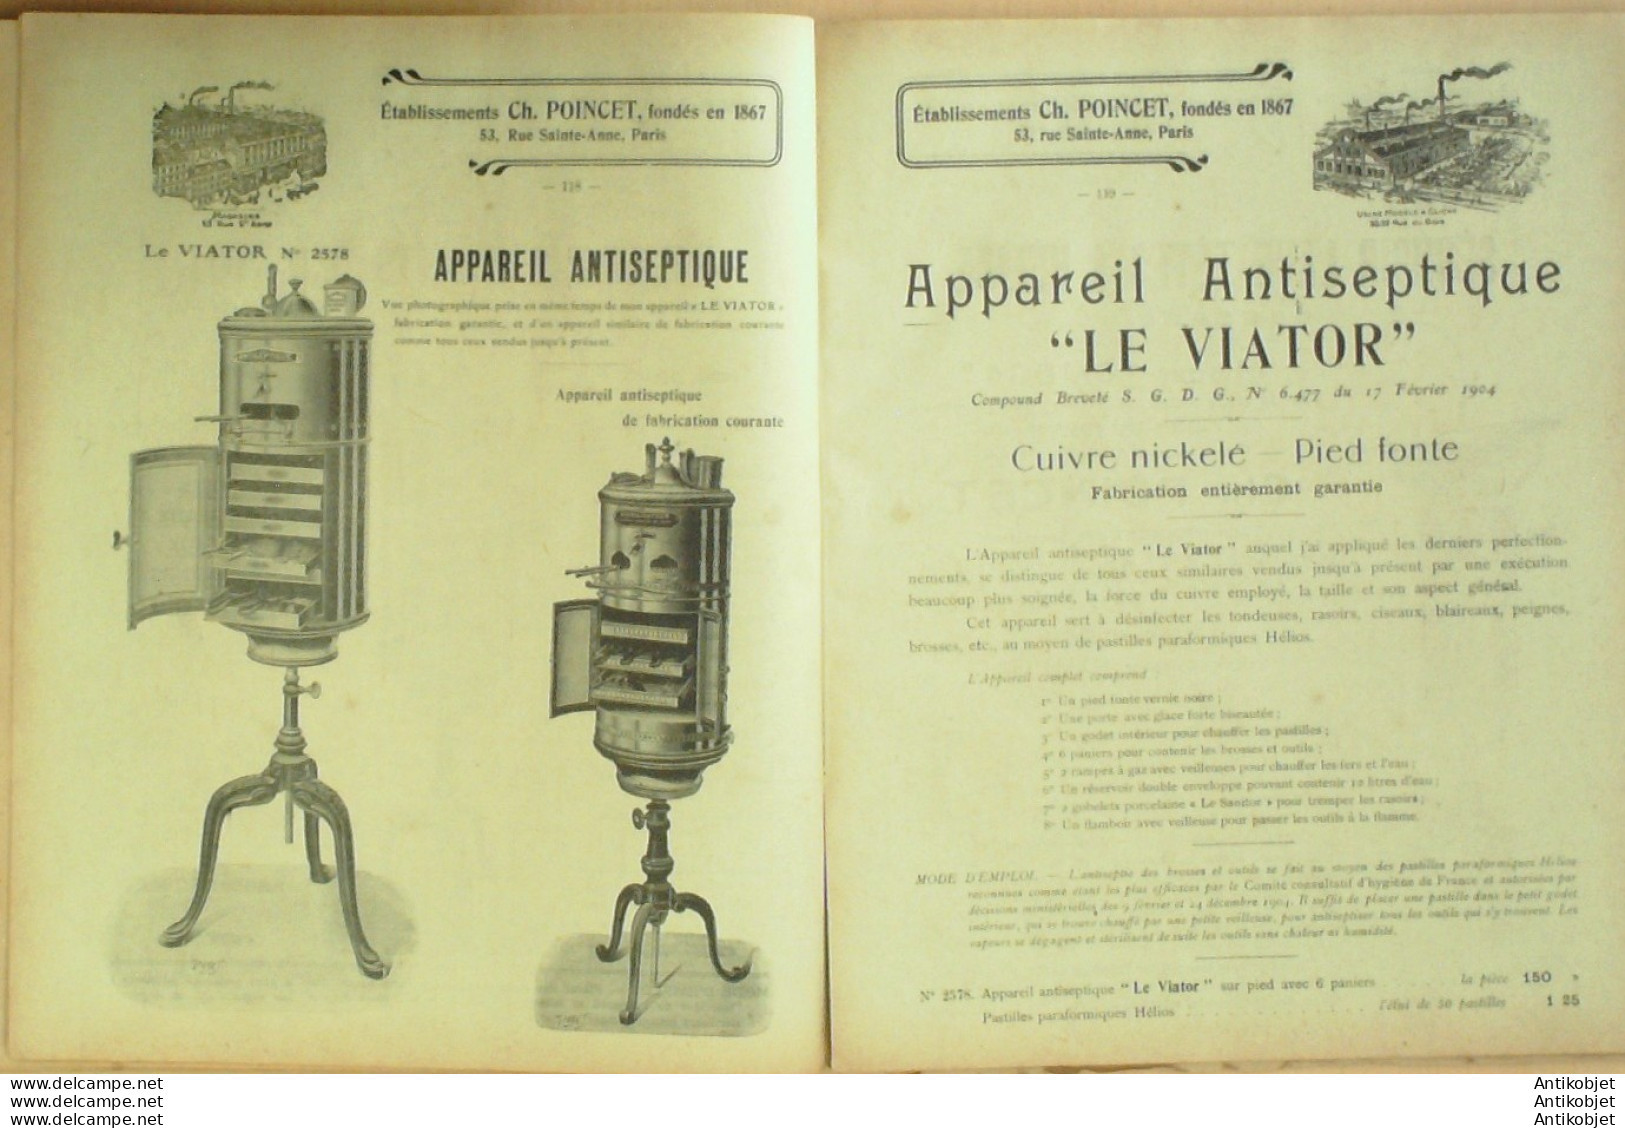 LAVABOS POINCET CH (Matériels coiffure Plomberie Comptoirs) 1907